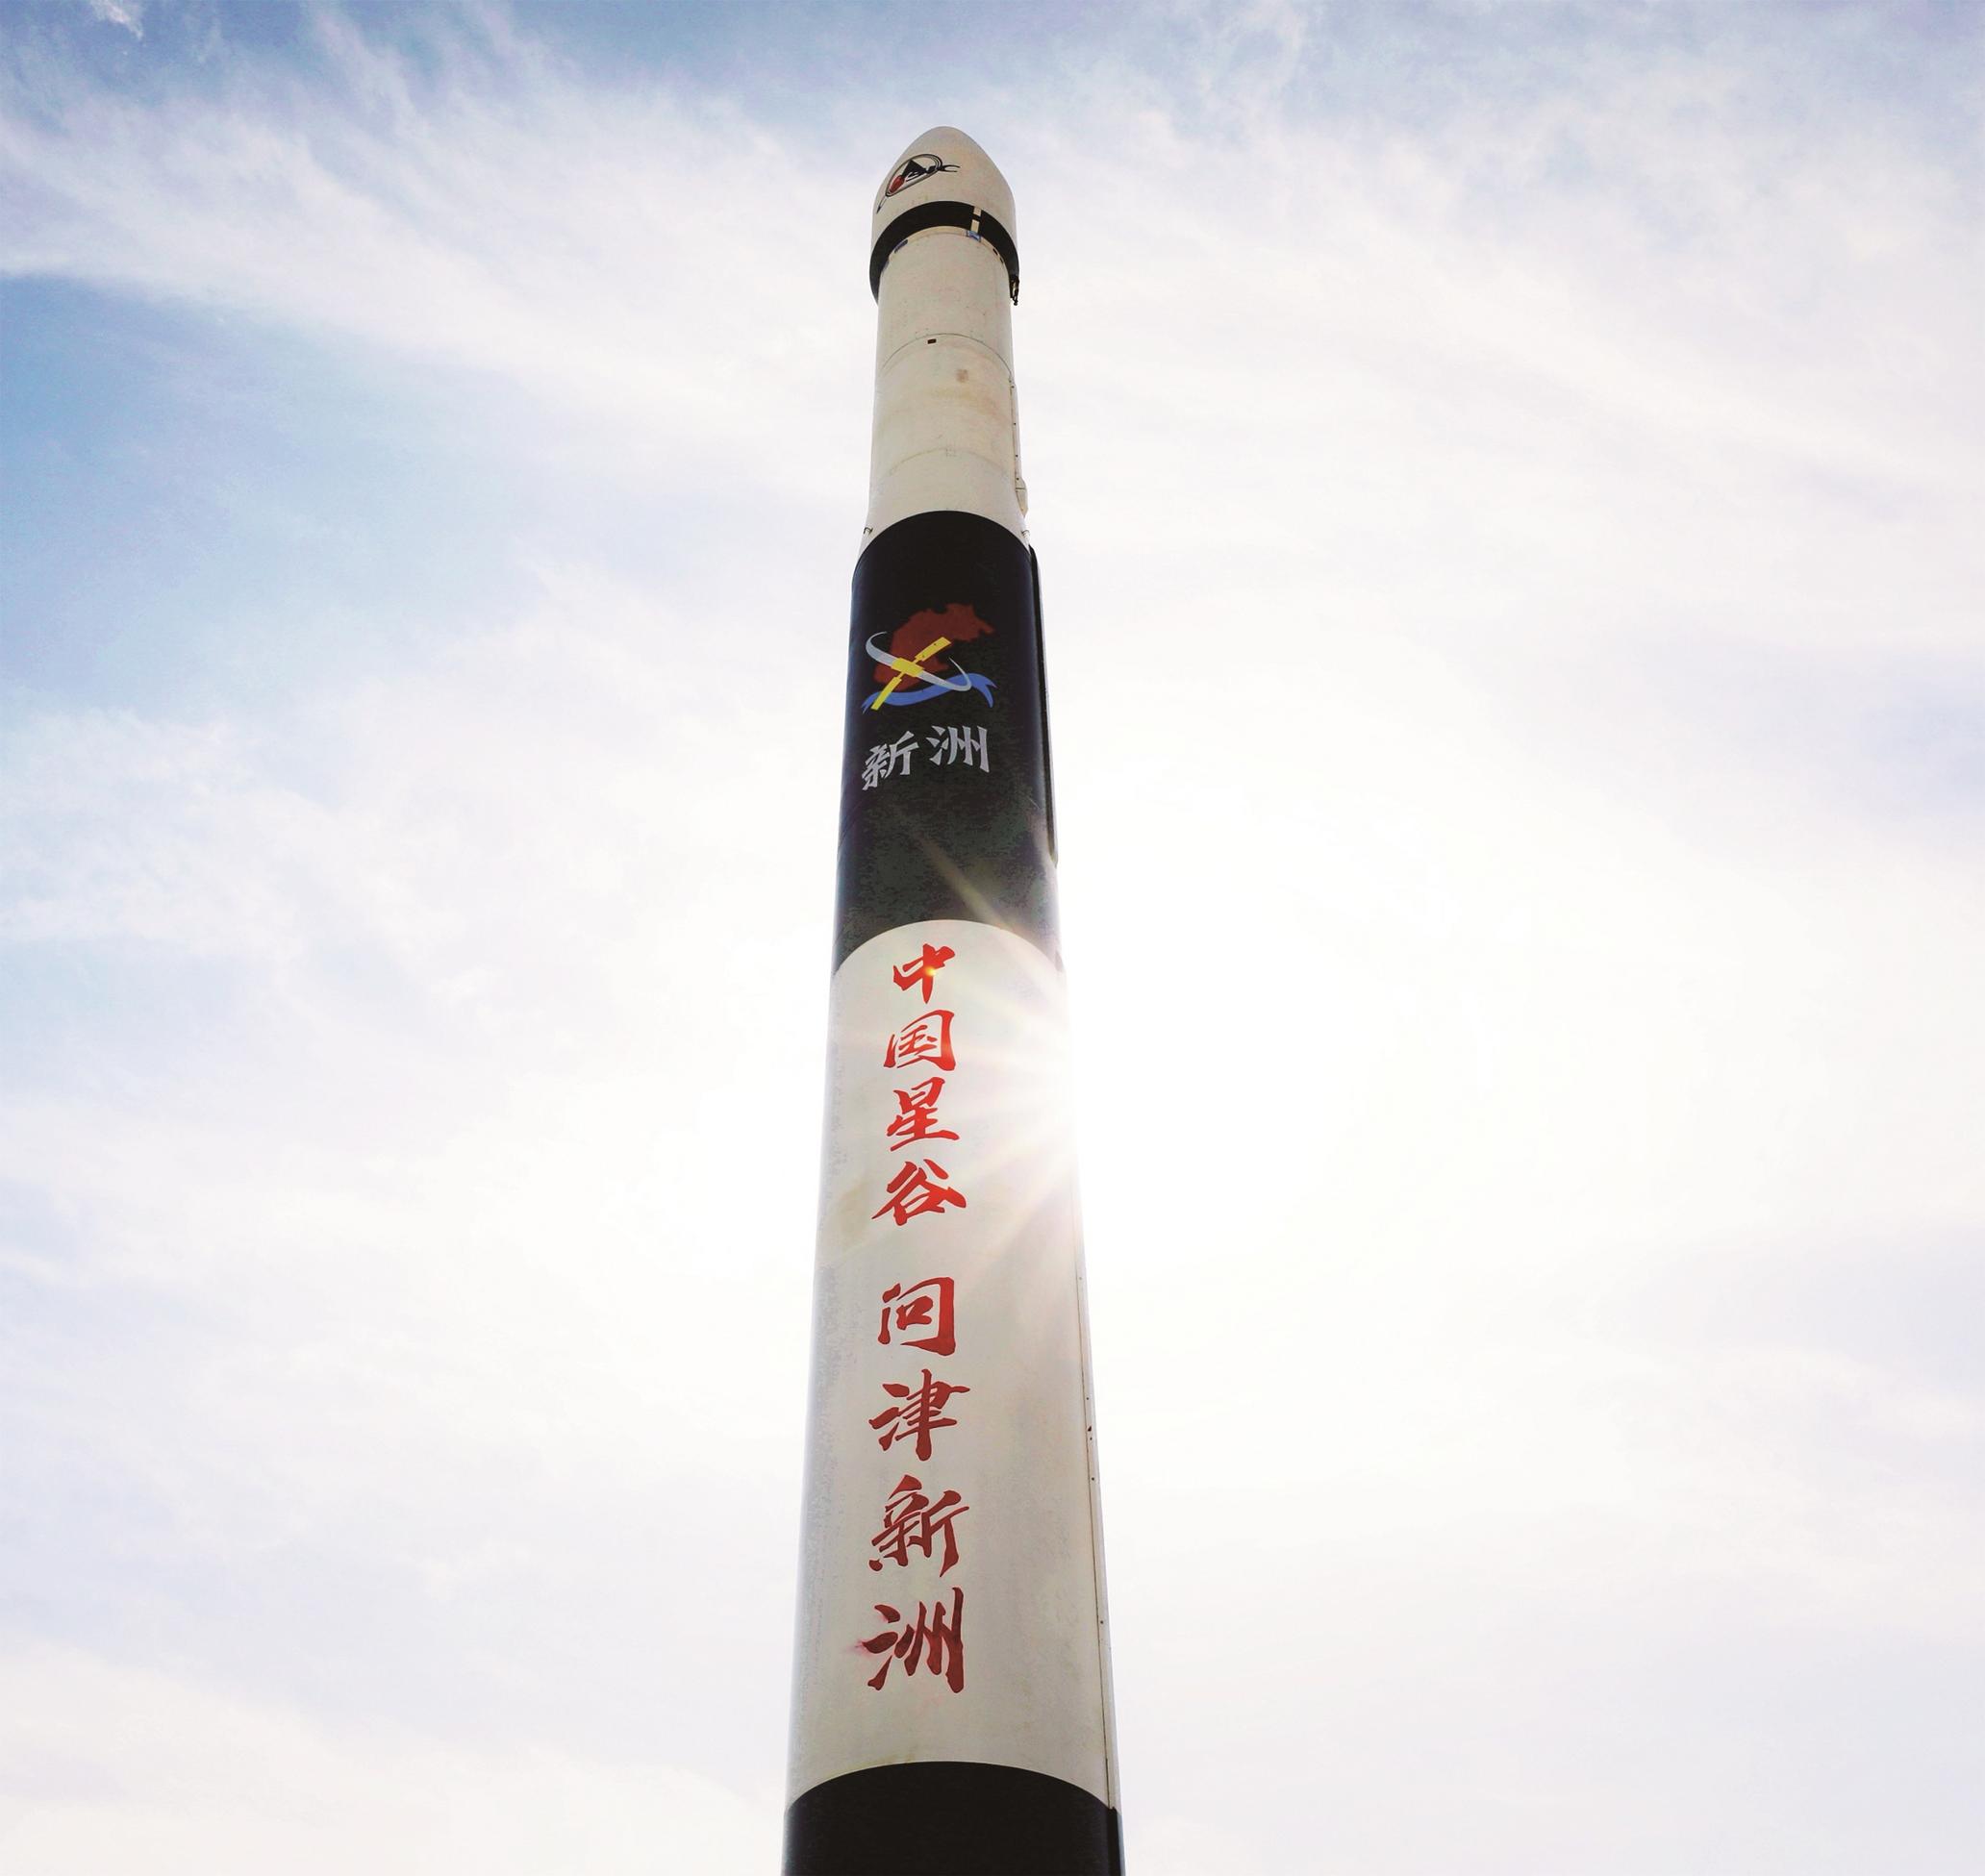 "新洲"号火箭成功发射 星谷快步迈向"中国航天第三极 新洲倾力做强